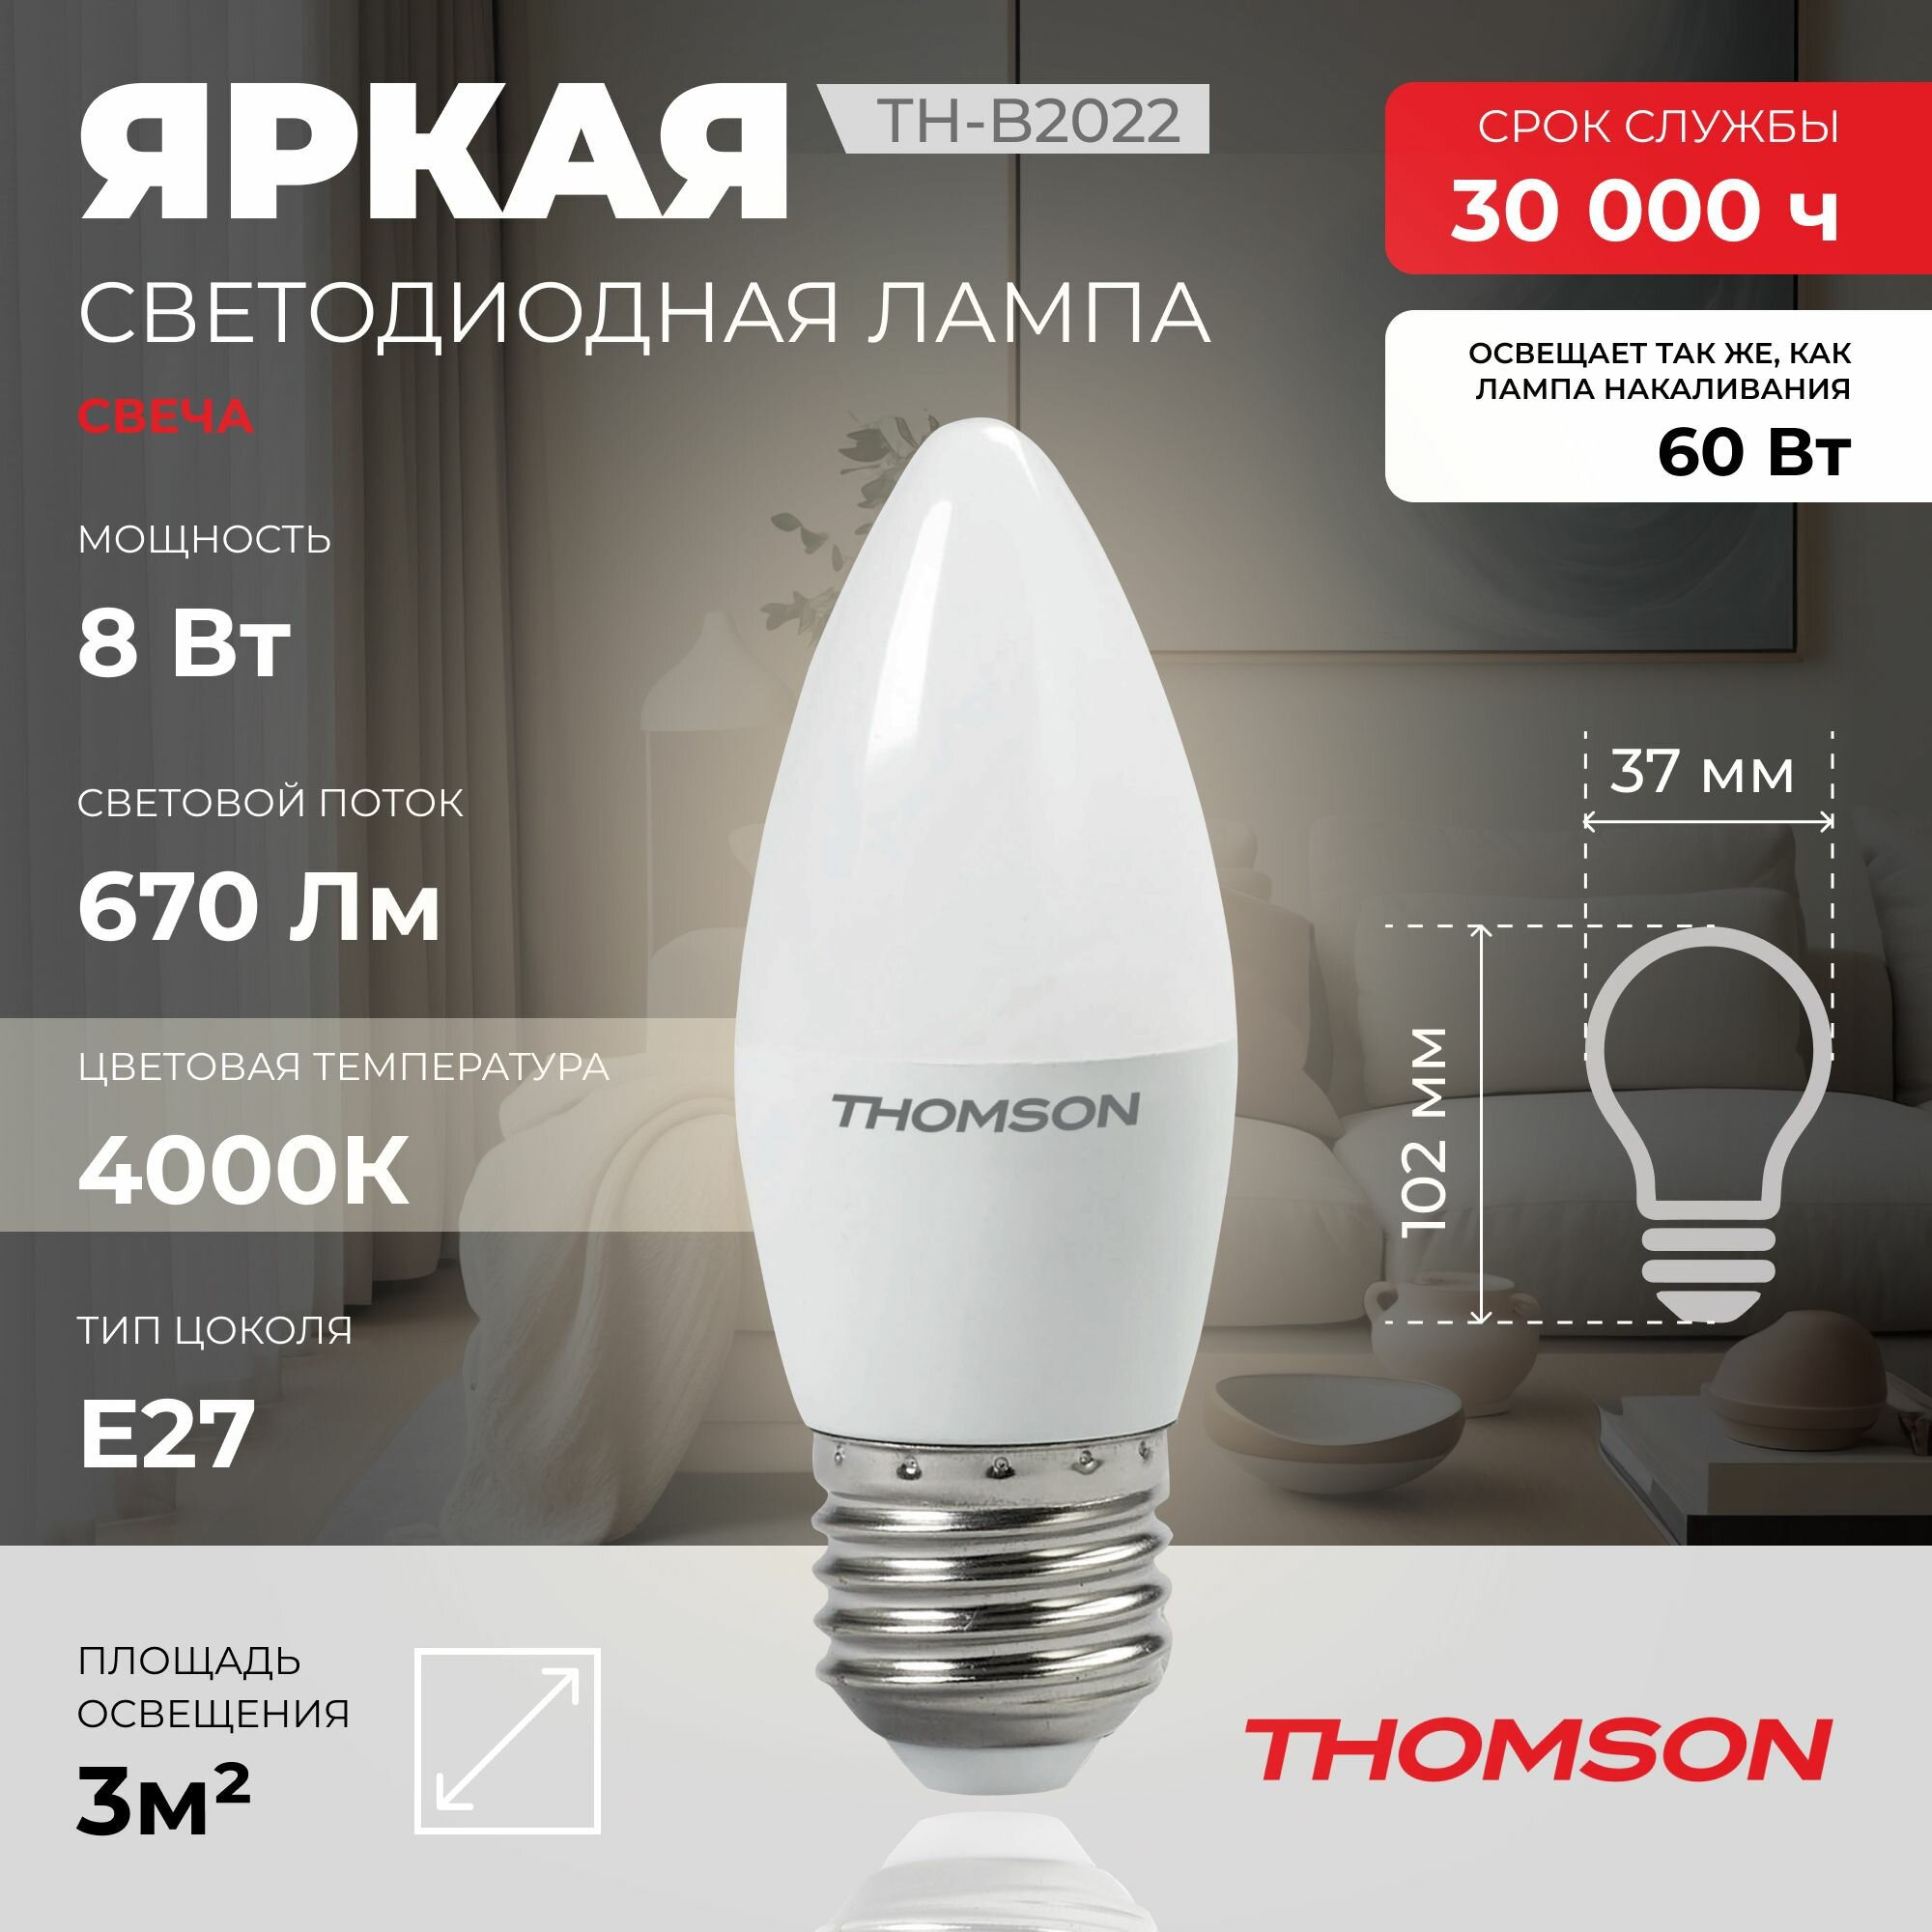 Лампочка Thomson TH-B2022 8 Вт, E27, 4000K, свеча, нейтральный белый свет